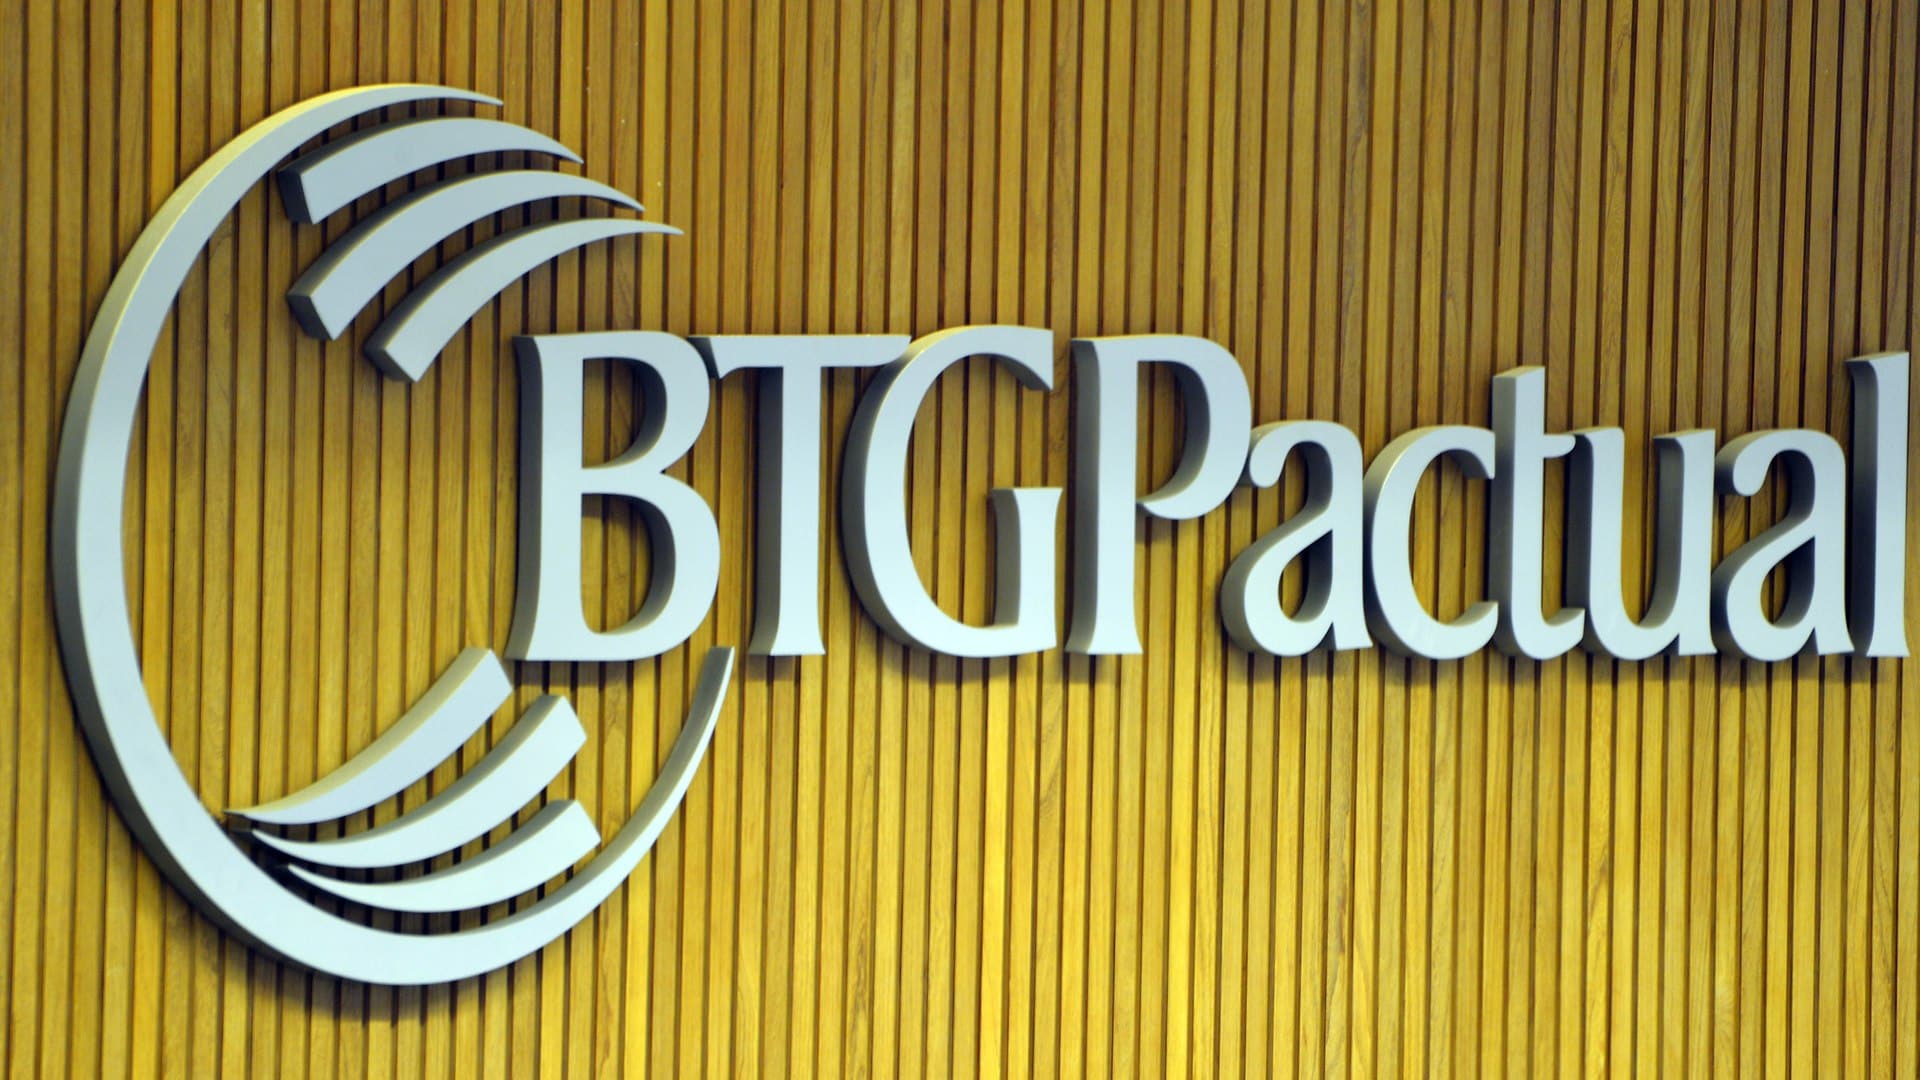 BTG Pactual migrando para bancos digitais Entra na area de varejo com novo lancamento